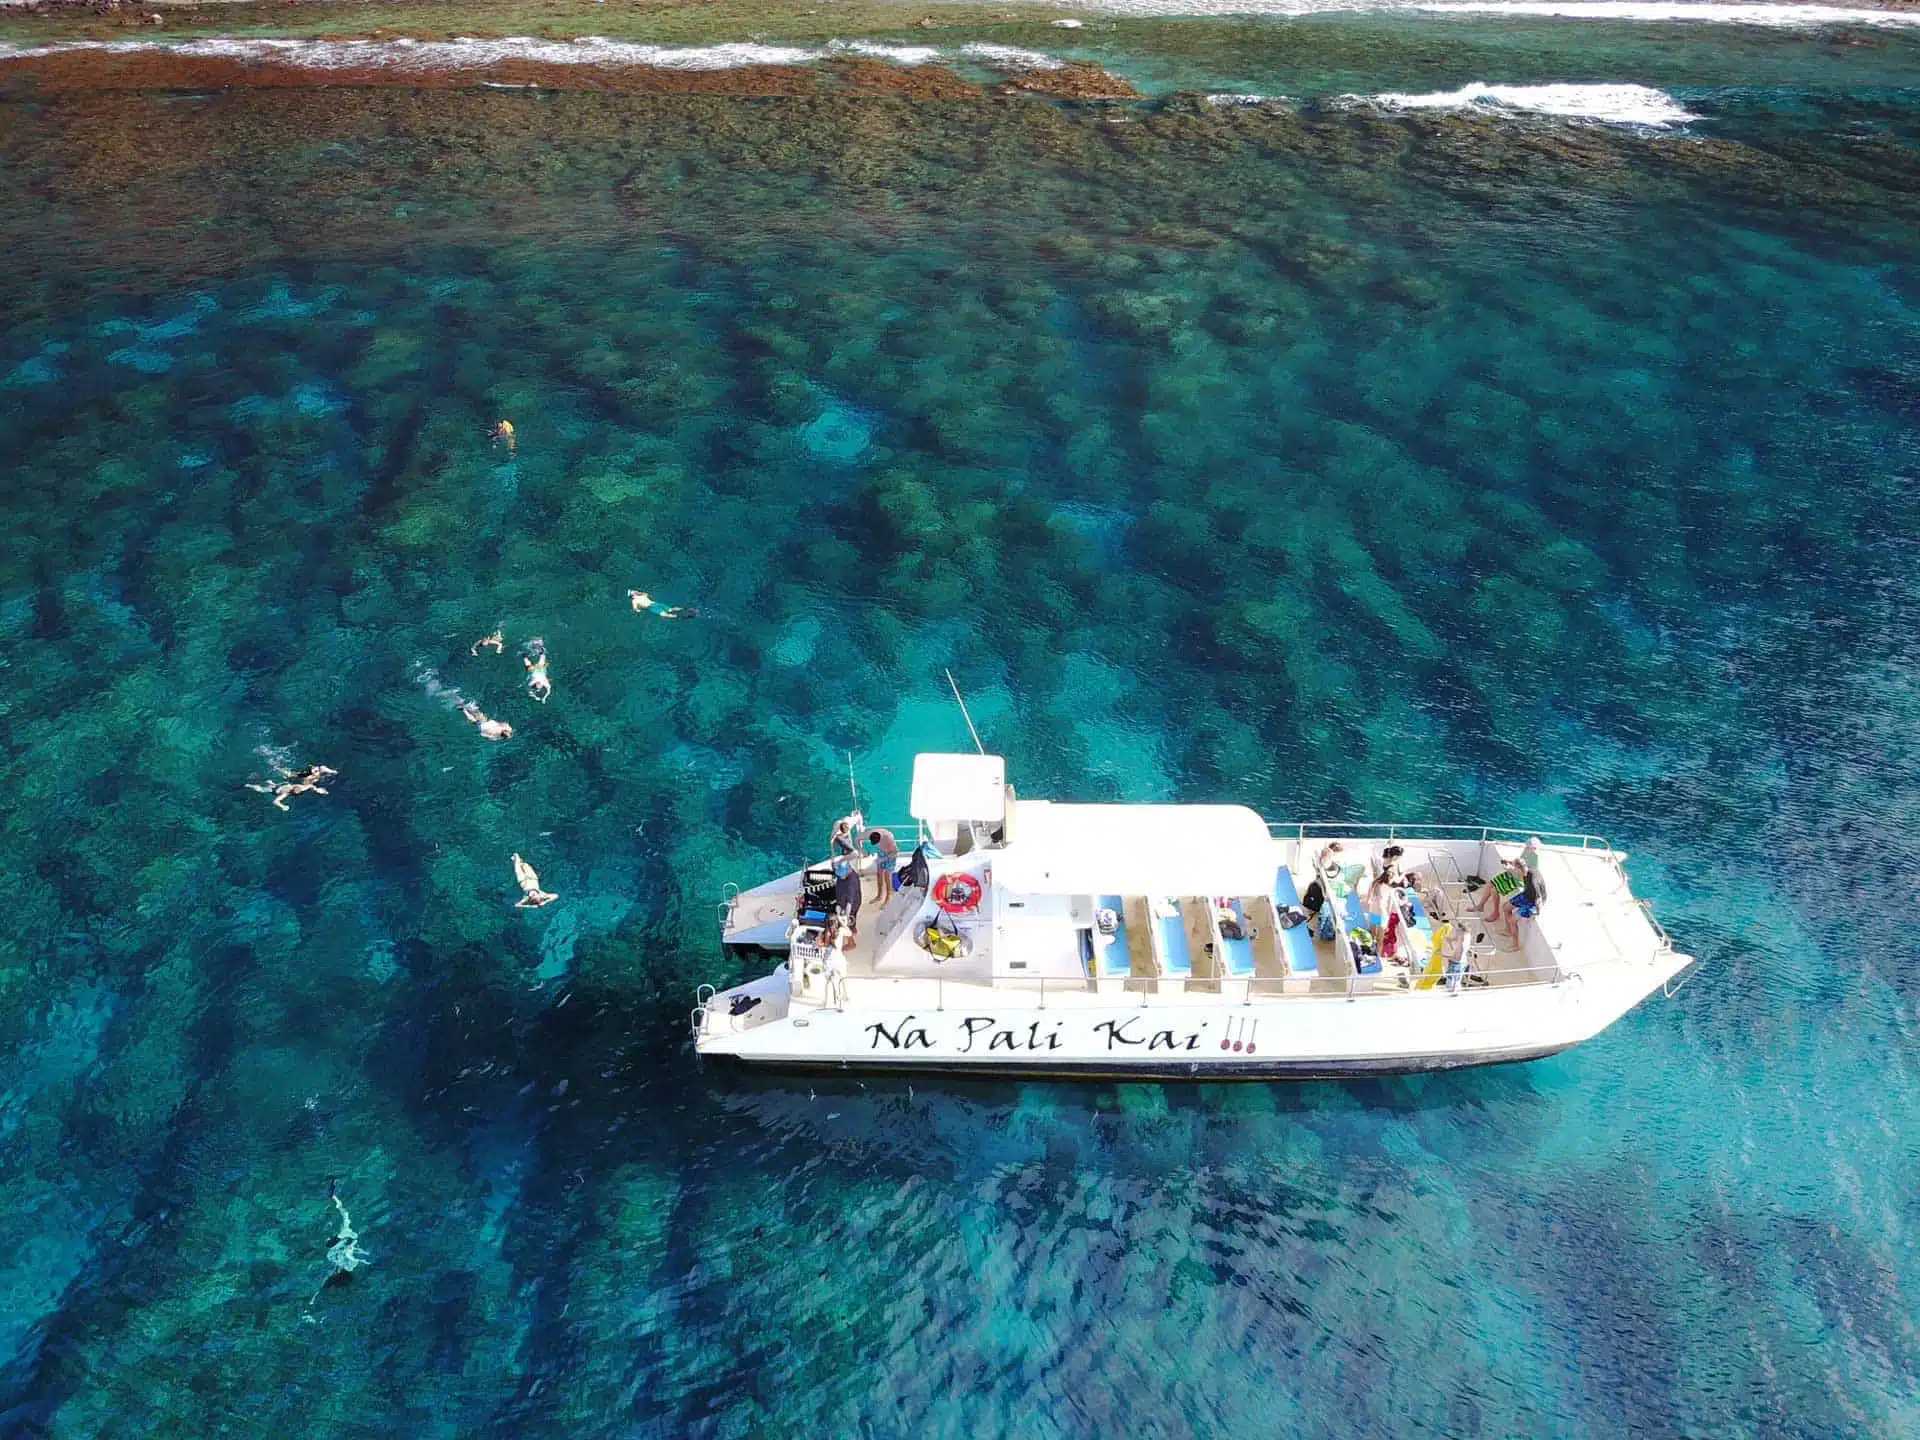 Na Pali Coast Tour on the Amazing Na Pali Kai III is a Boat Activity located in the city of Waimea on Kauai, Hawaii